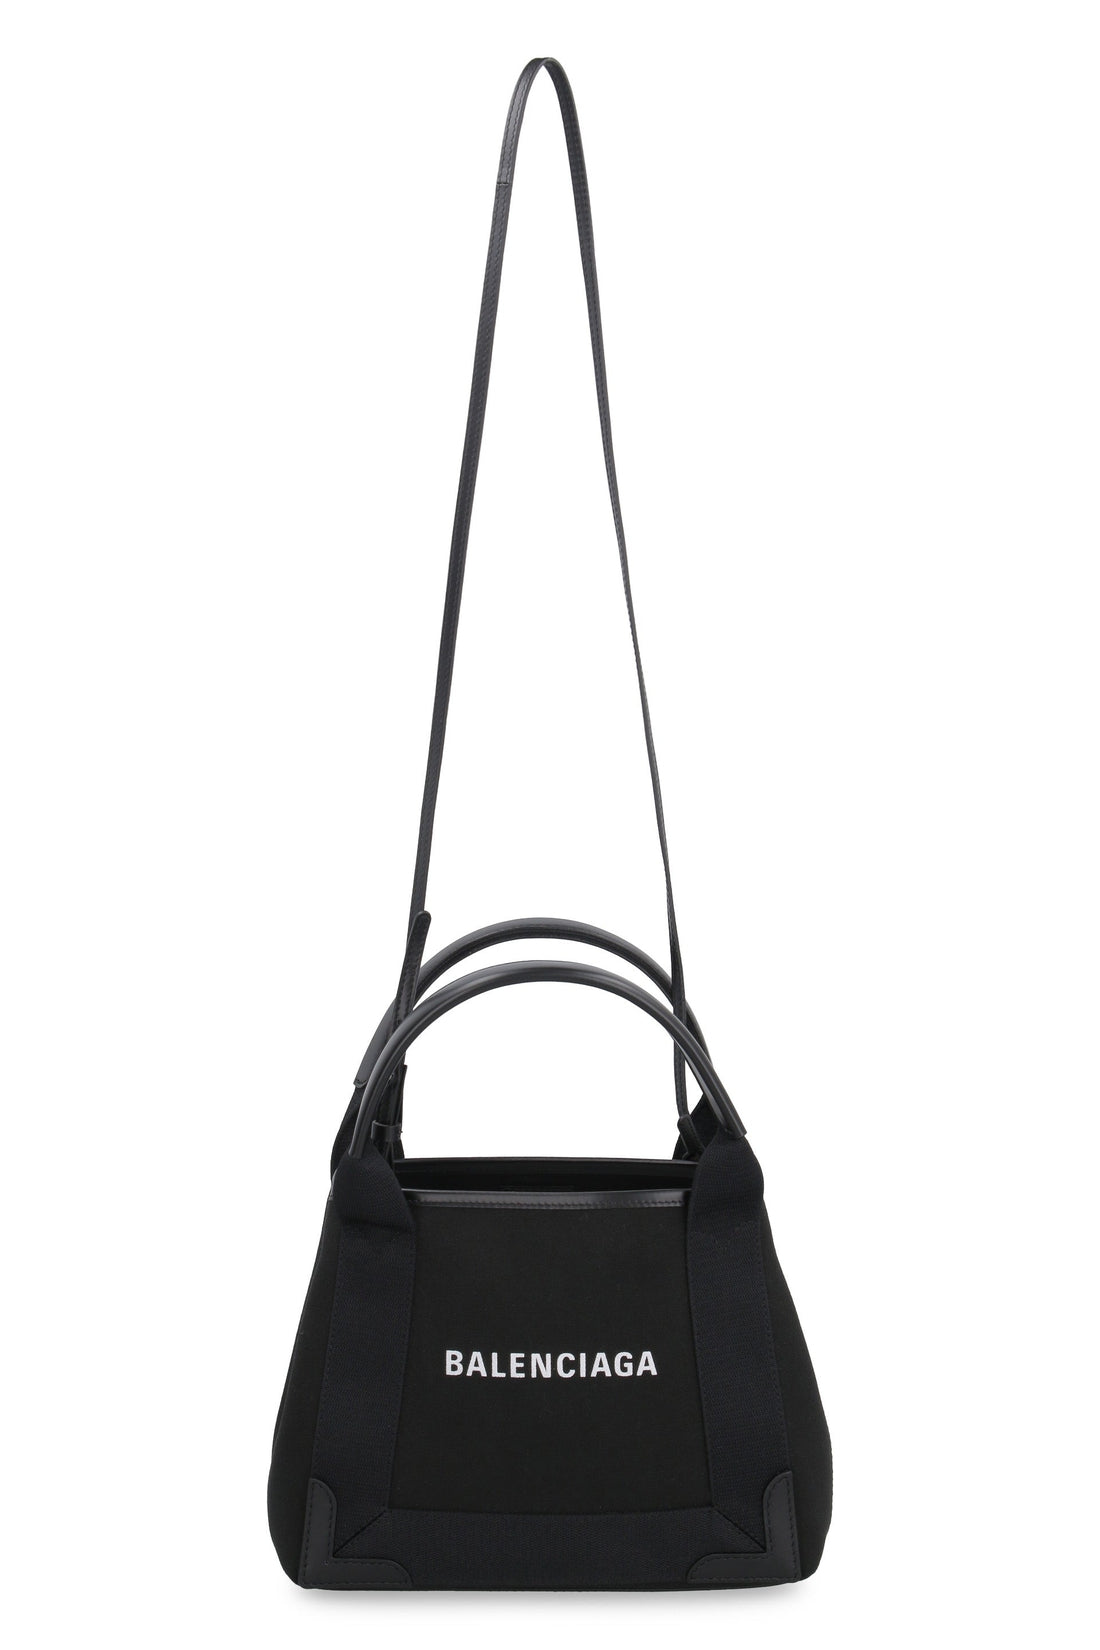 Balenciaga-OUTLET-SALE-Cabas XS canvas tote bag-ARCHIVIST